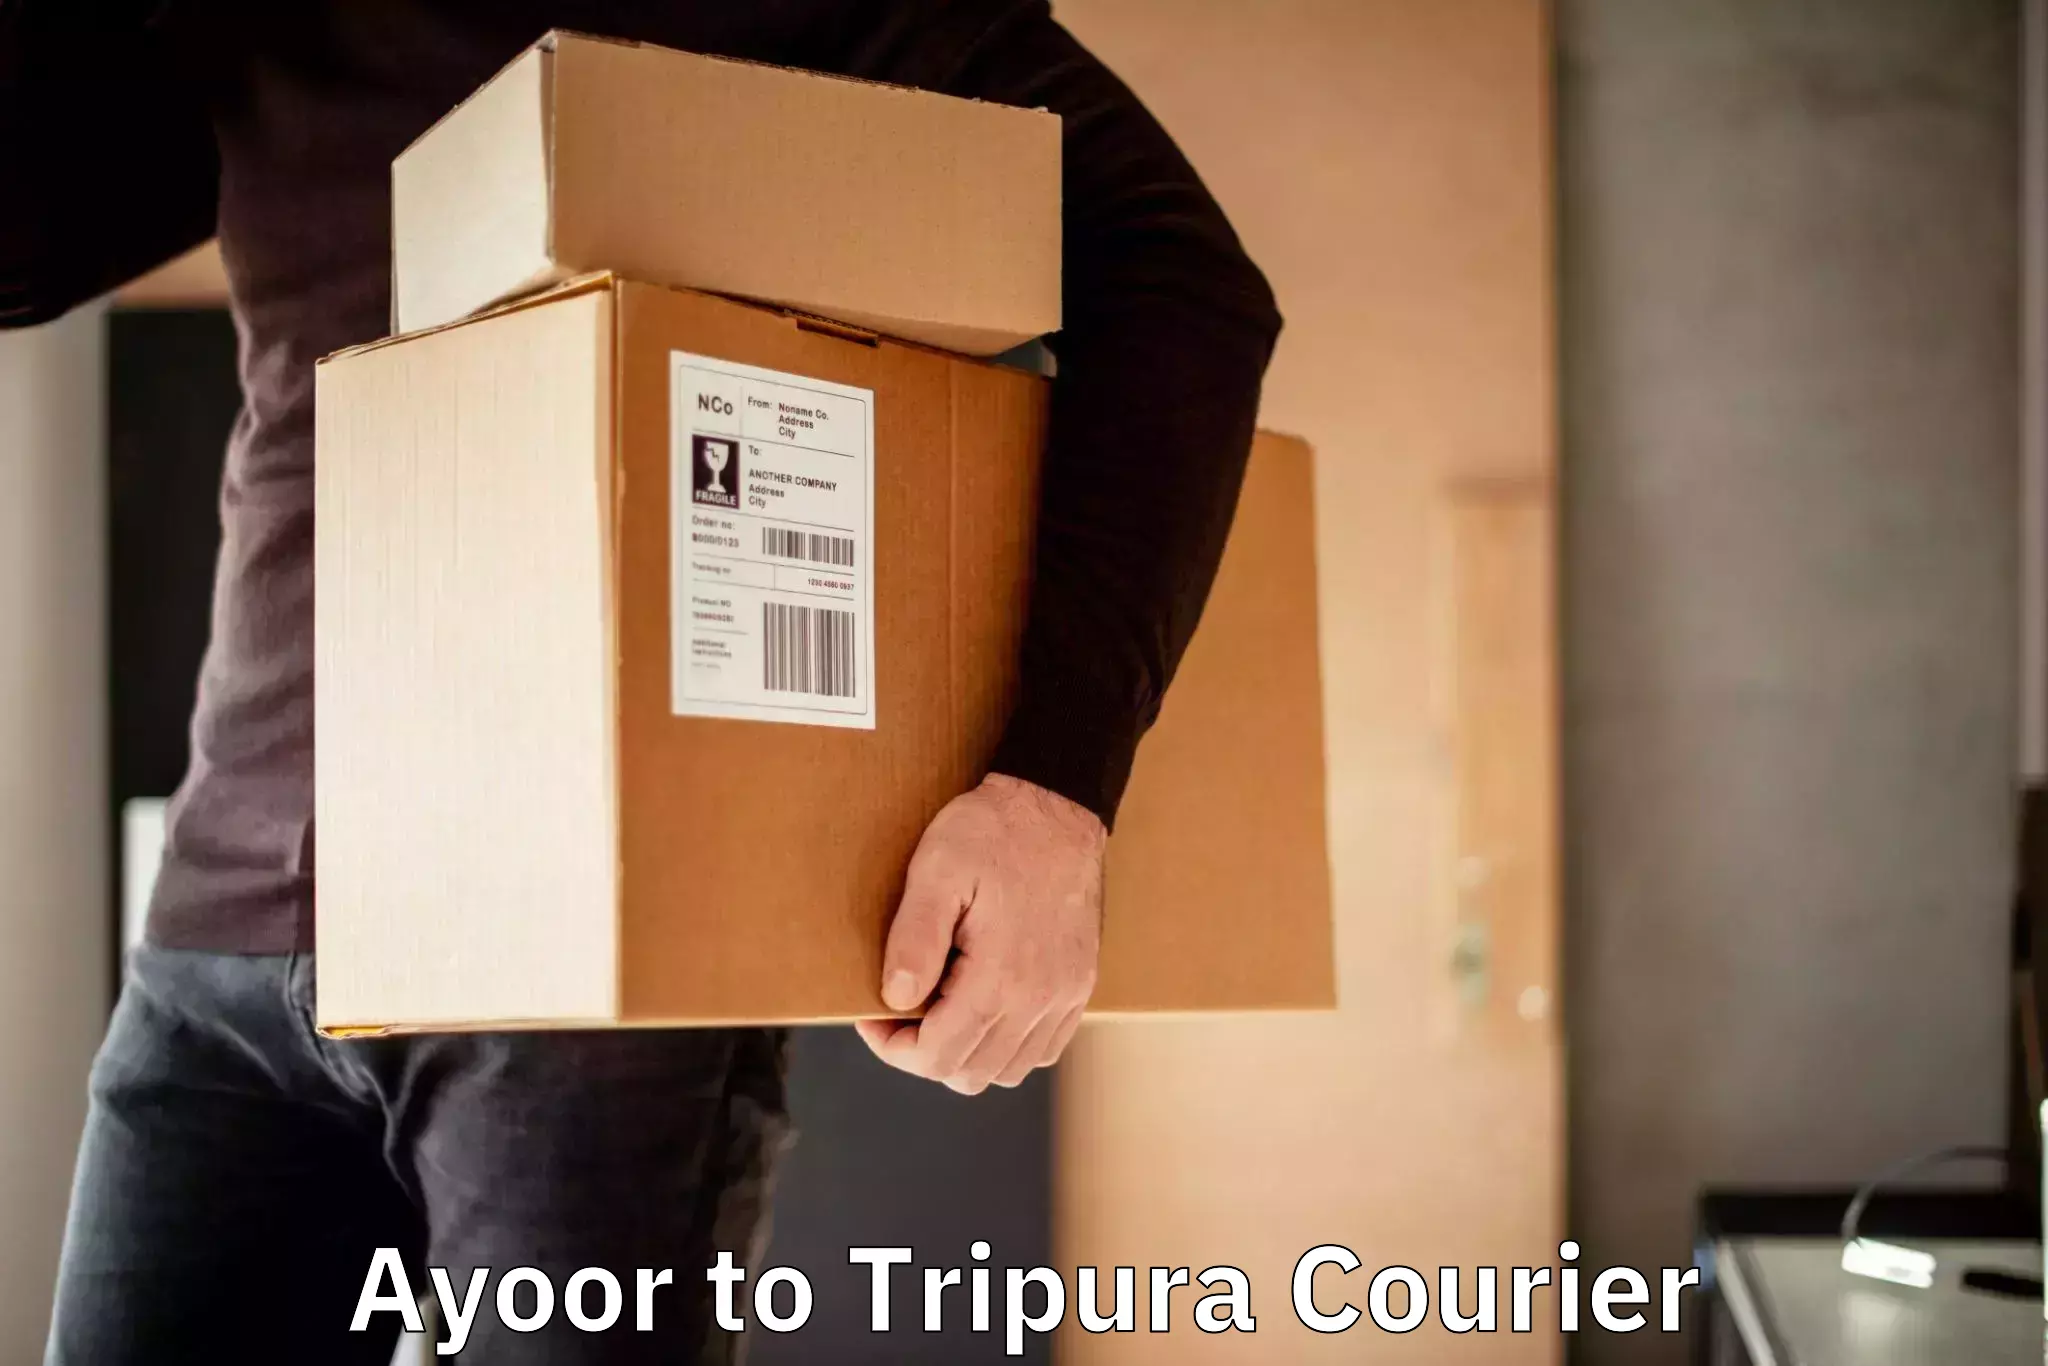 High-capacity parcel service Ayoor to Manu Bazar